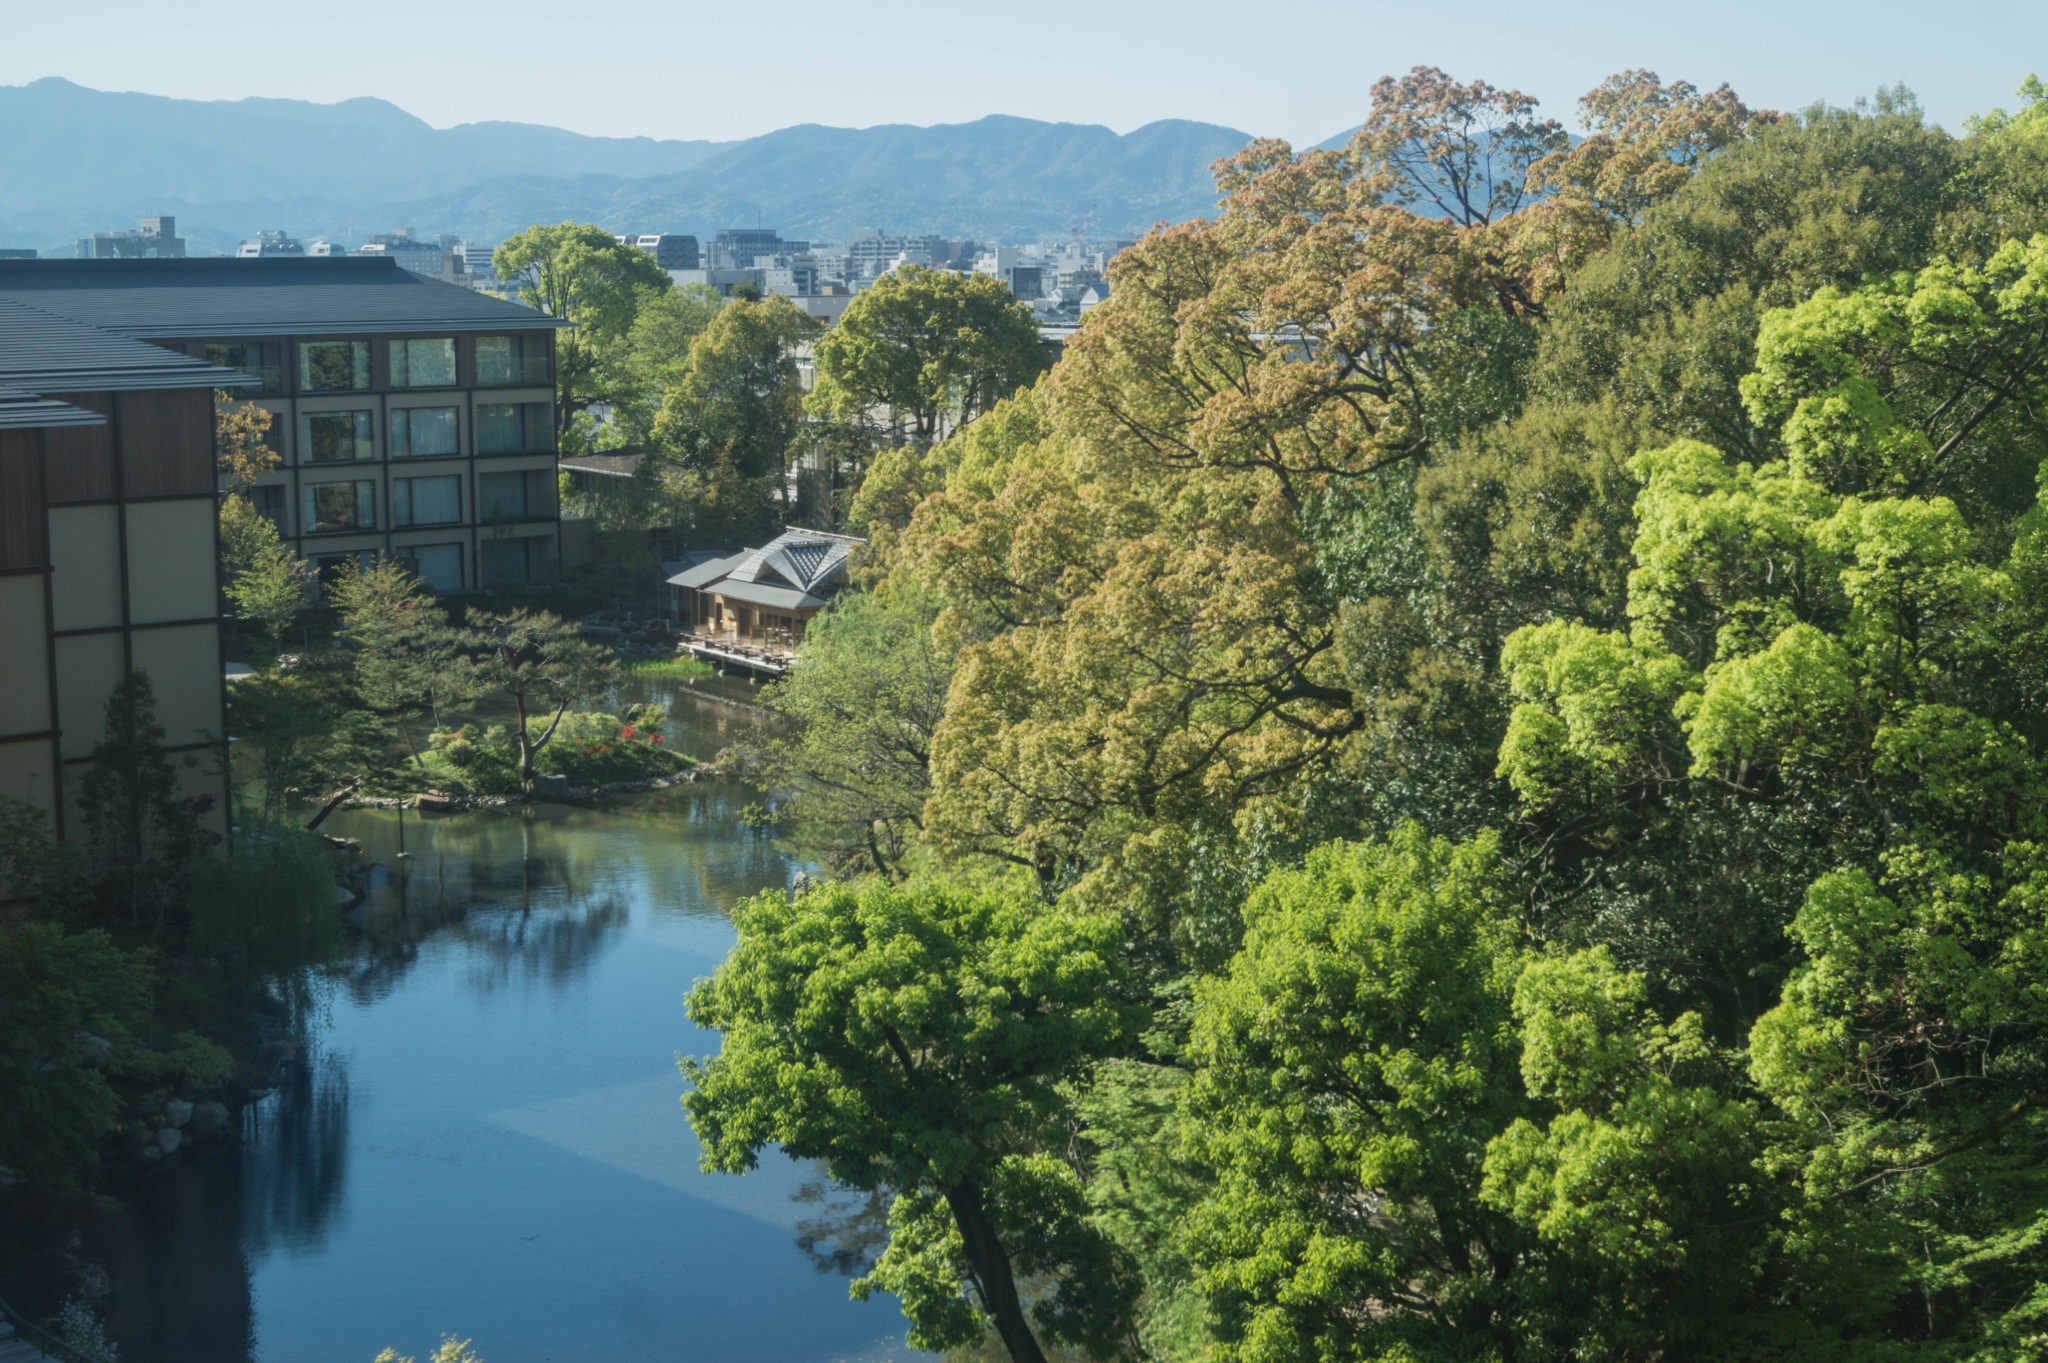 Das Four Seasons Hotel in Kyoto ist eine der nobleren Adressen in Kyoto.